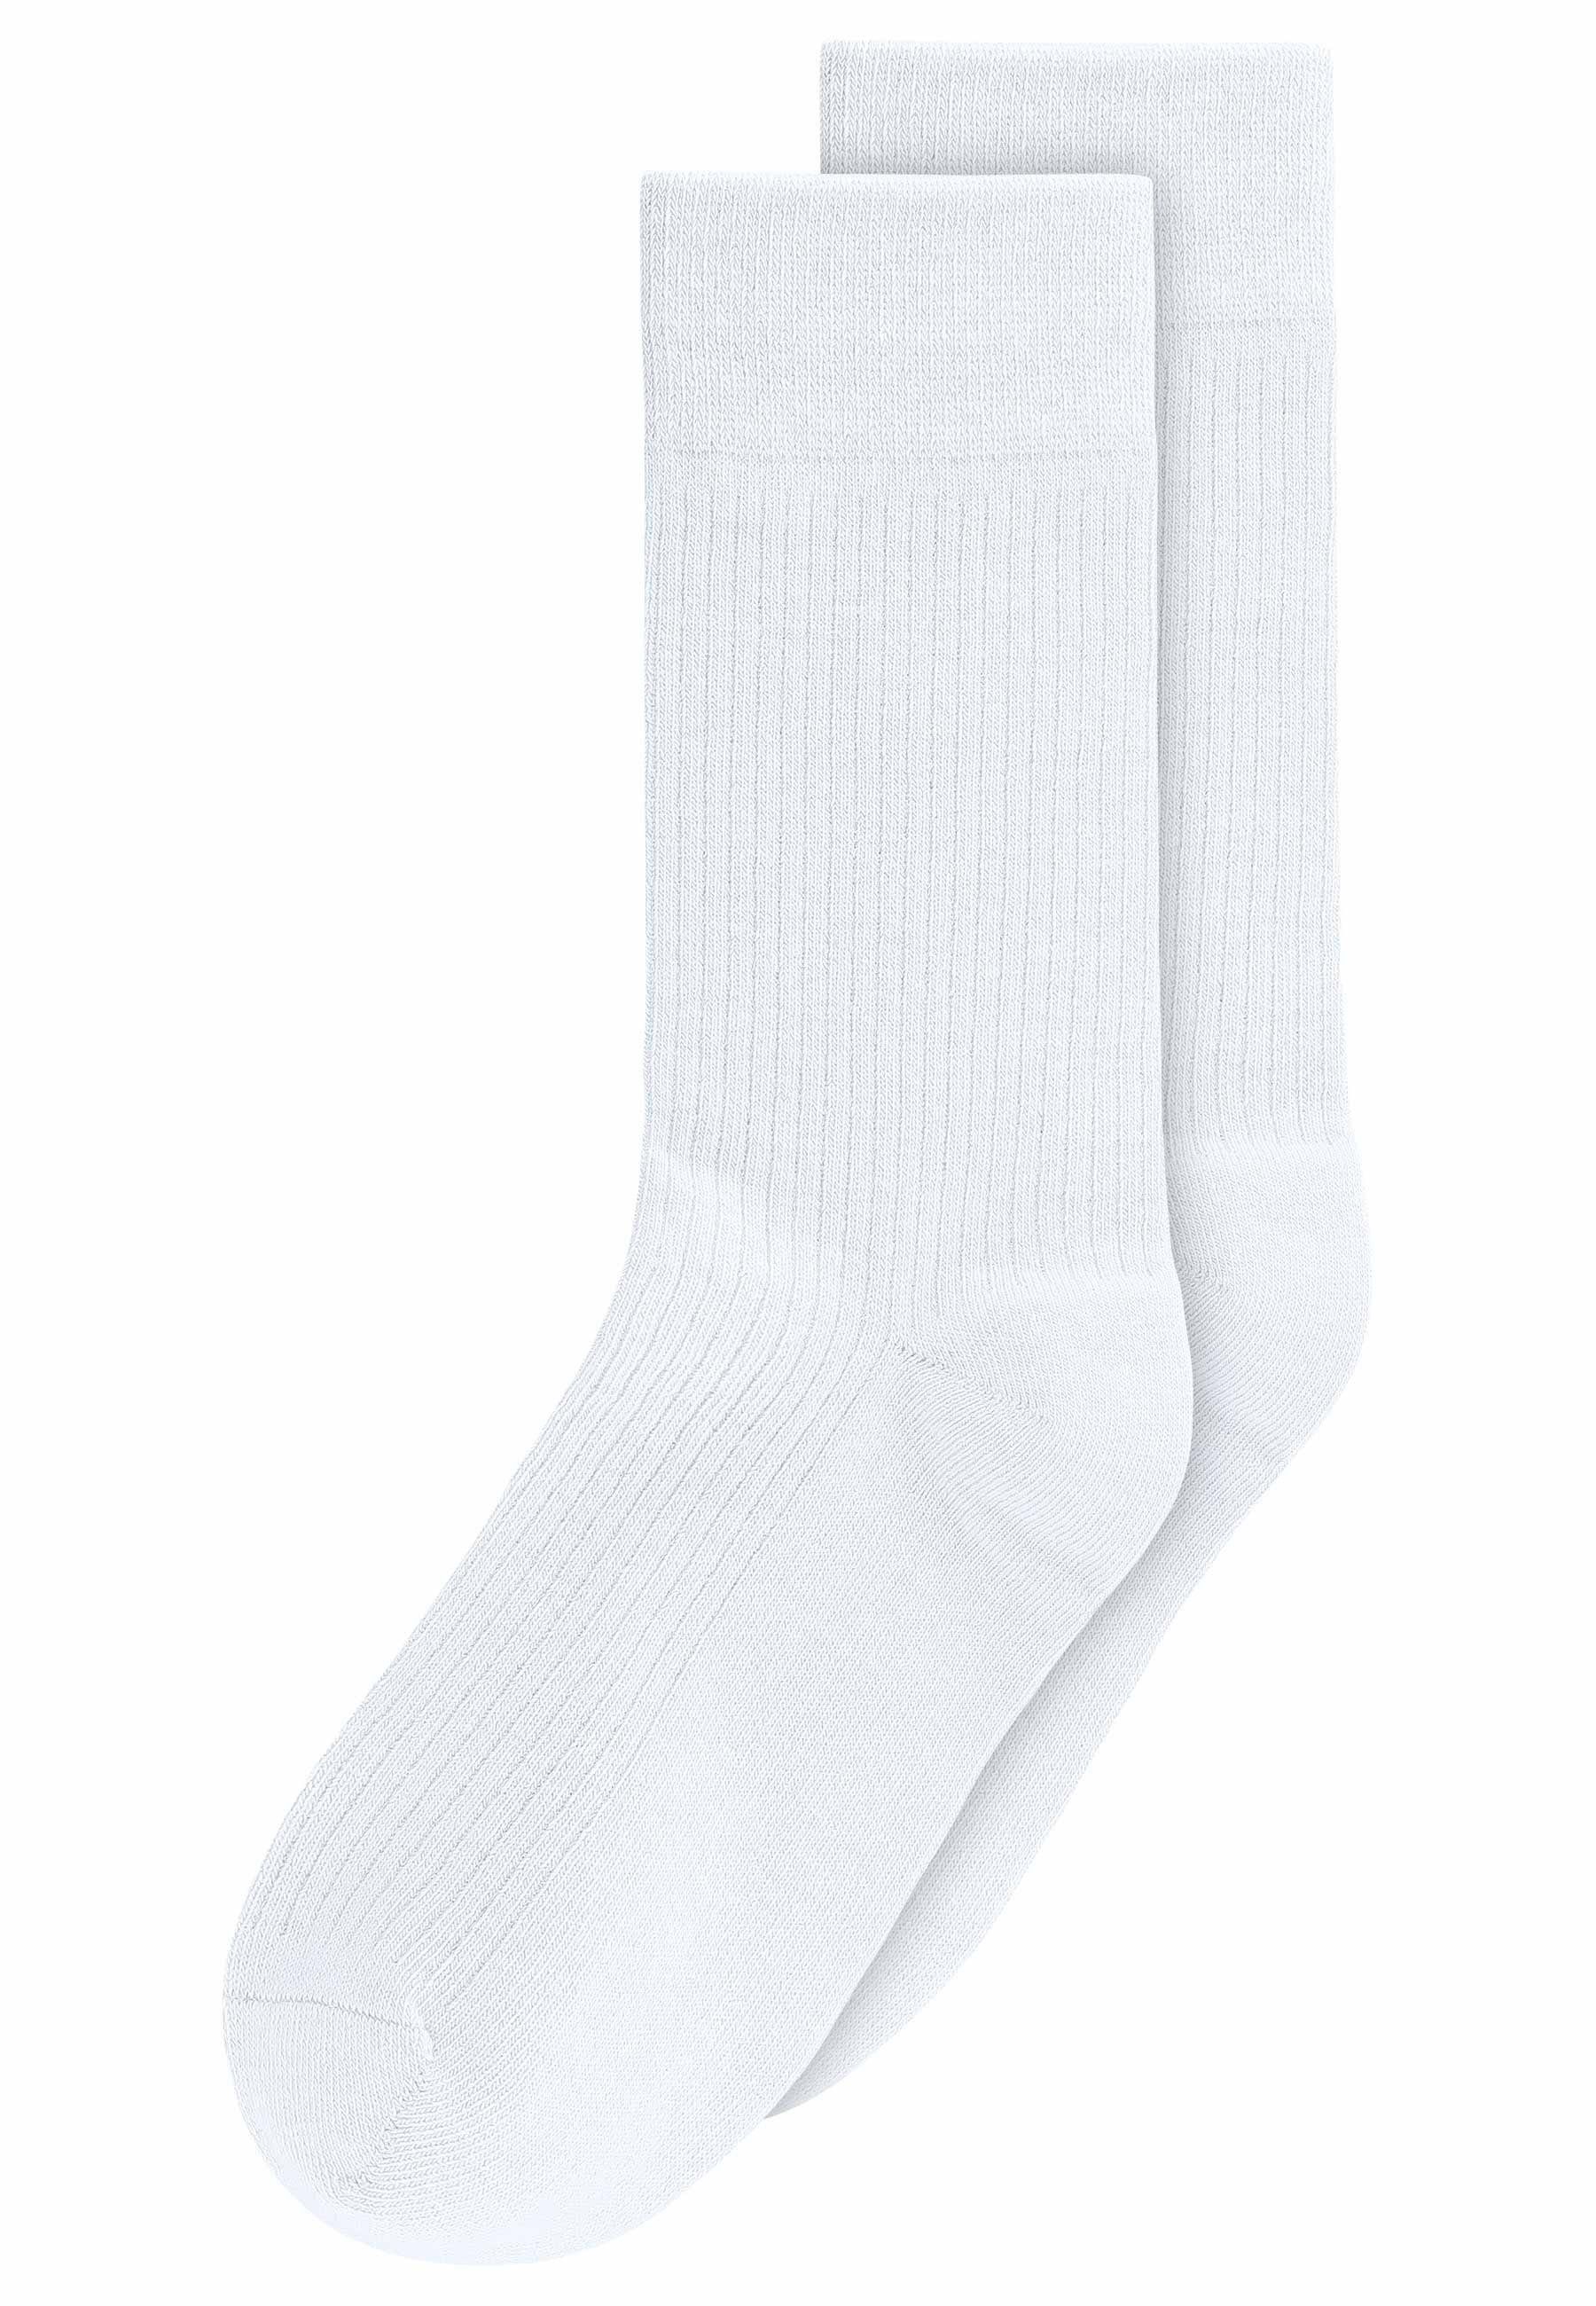 MELA Socken Gerippte Socken 2er Pack Das Elasthan "Roica" ist abbaubar, ohne Schadstoffe zu hinterlassen